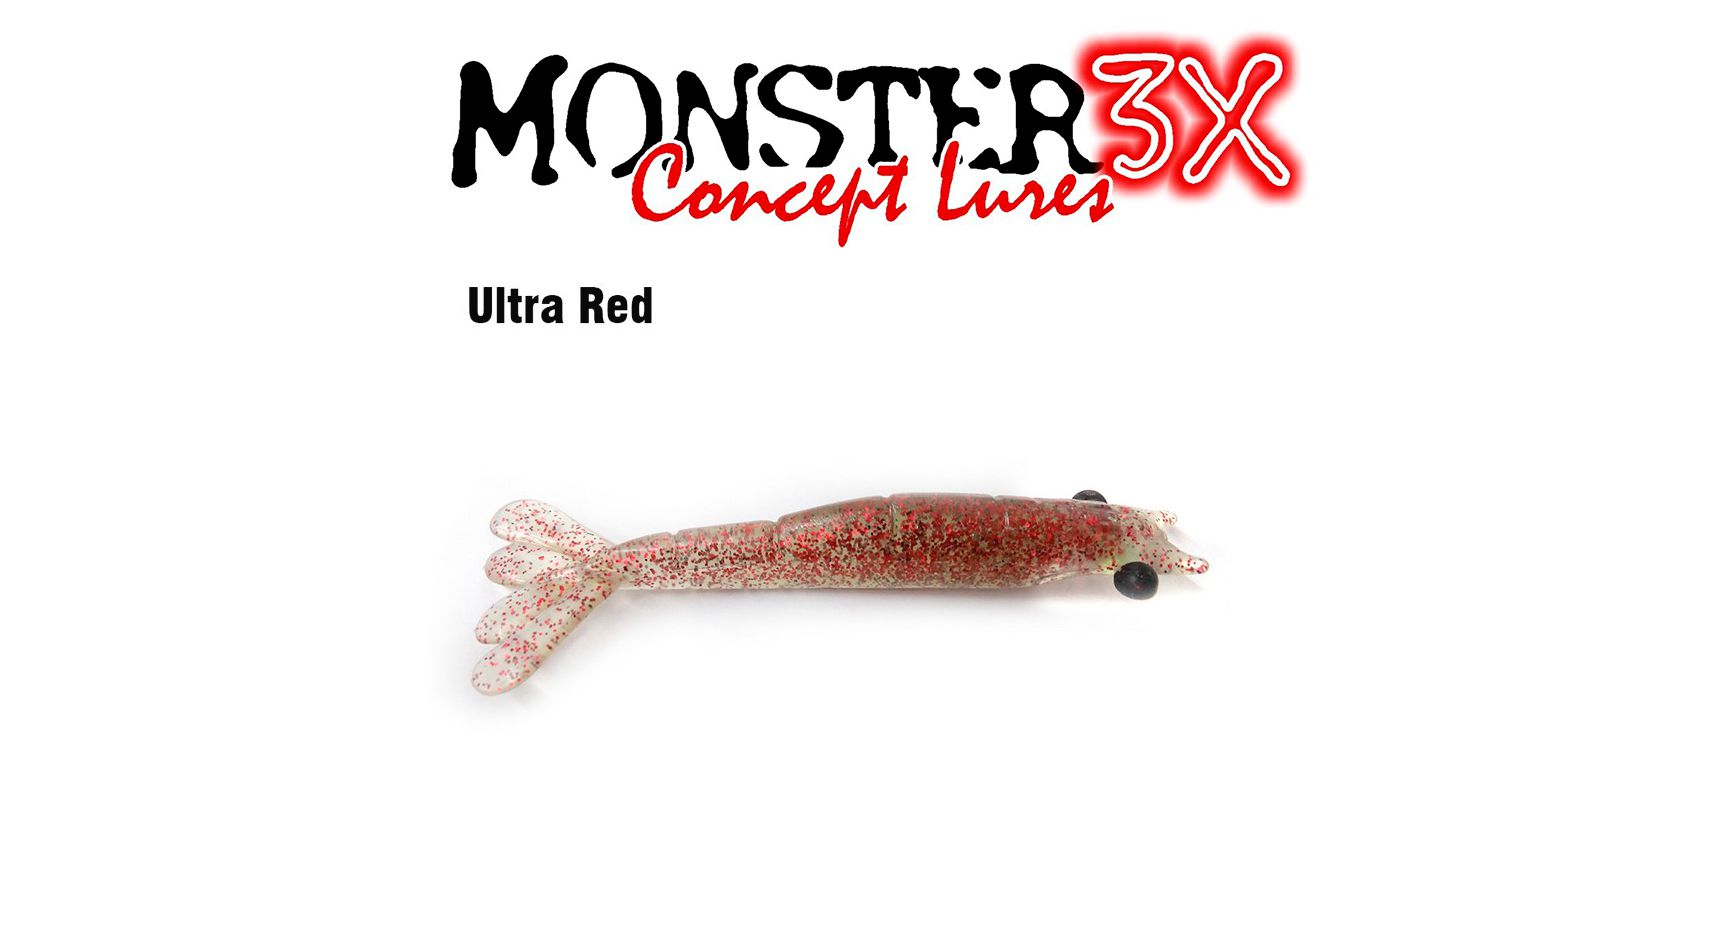 Isca Artificial Soft Monster 3X Ultra Soft (9cm) 3 Unidades - Várias Cores - Life Pesca - Sua loja de Pesca, Camping e Lazer